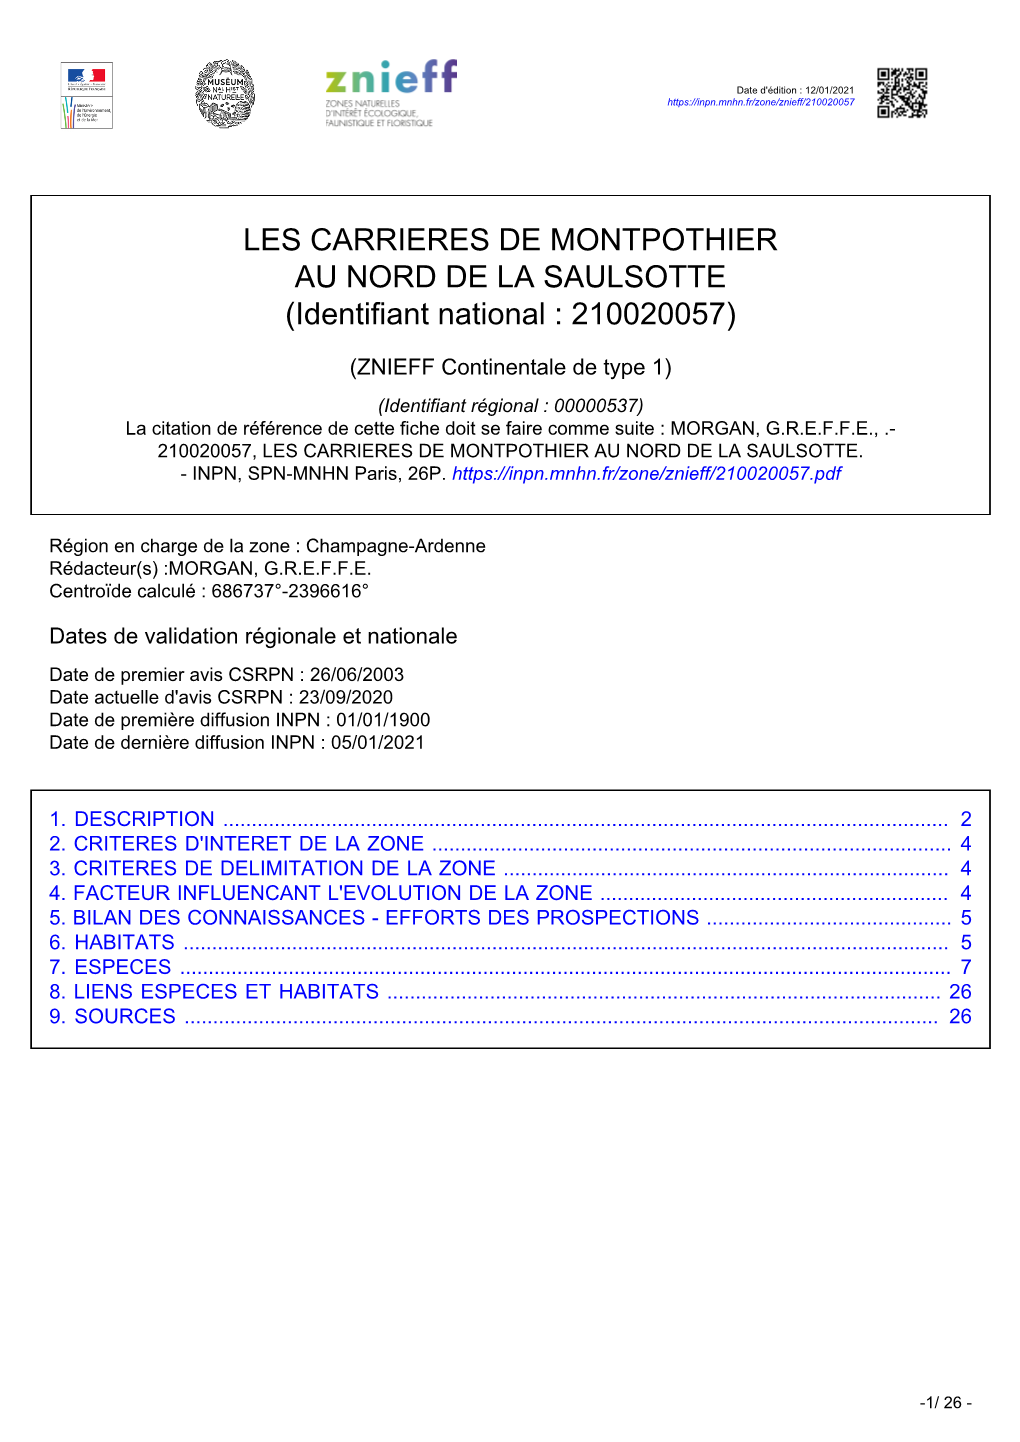 LES CARRIERES DE MONTPOTHIER AU NORD DE LA SAULSOTTE (Identifiant National : 210020057)